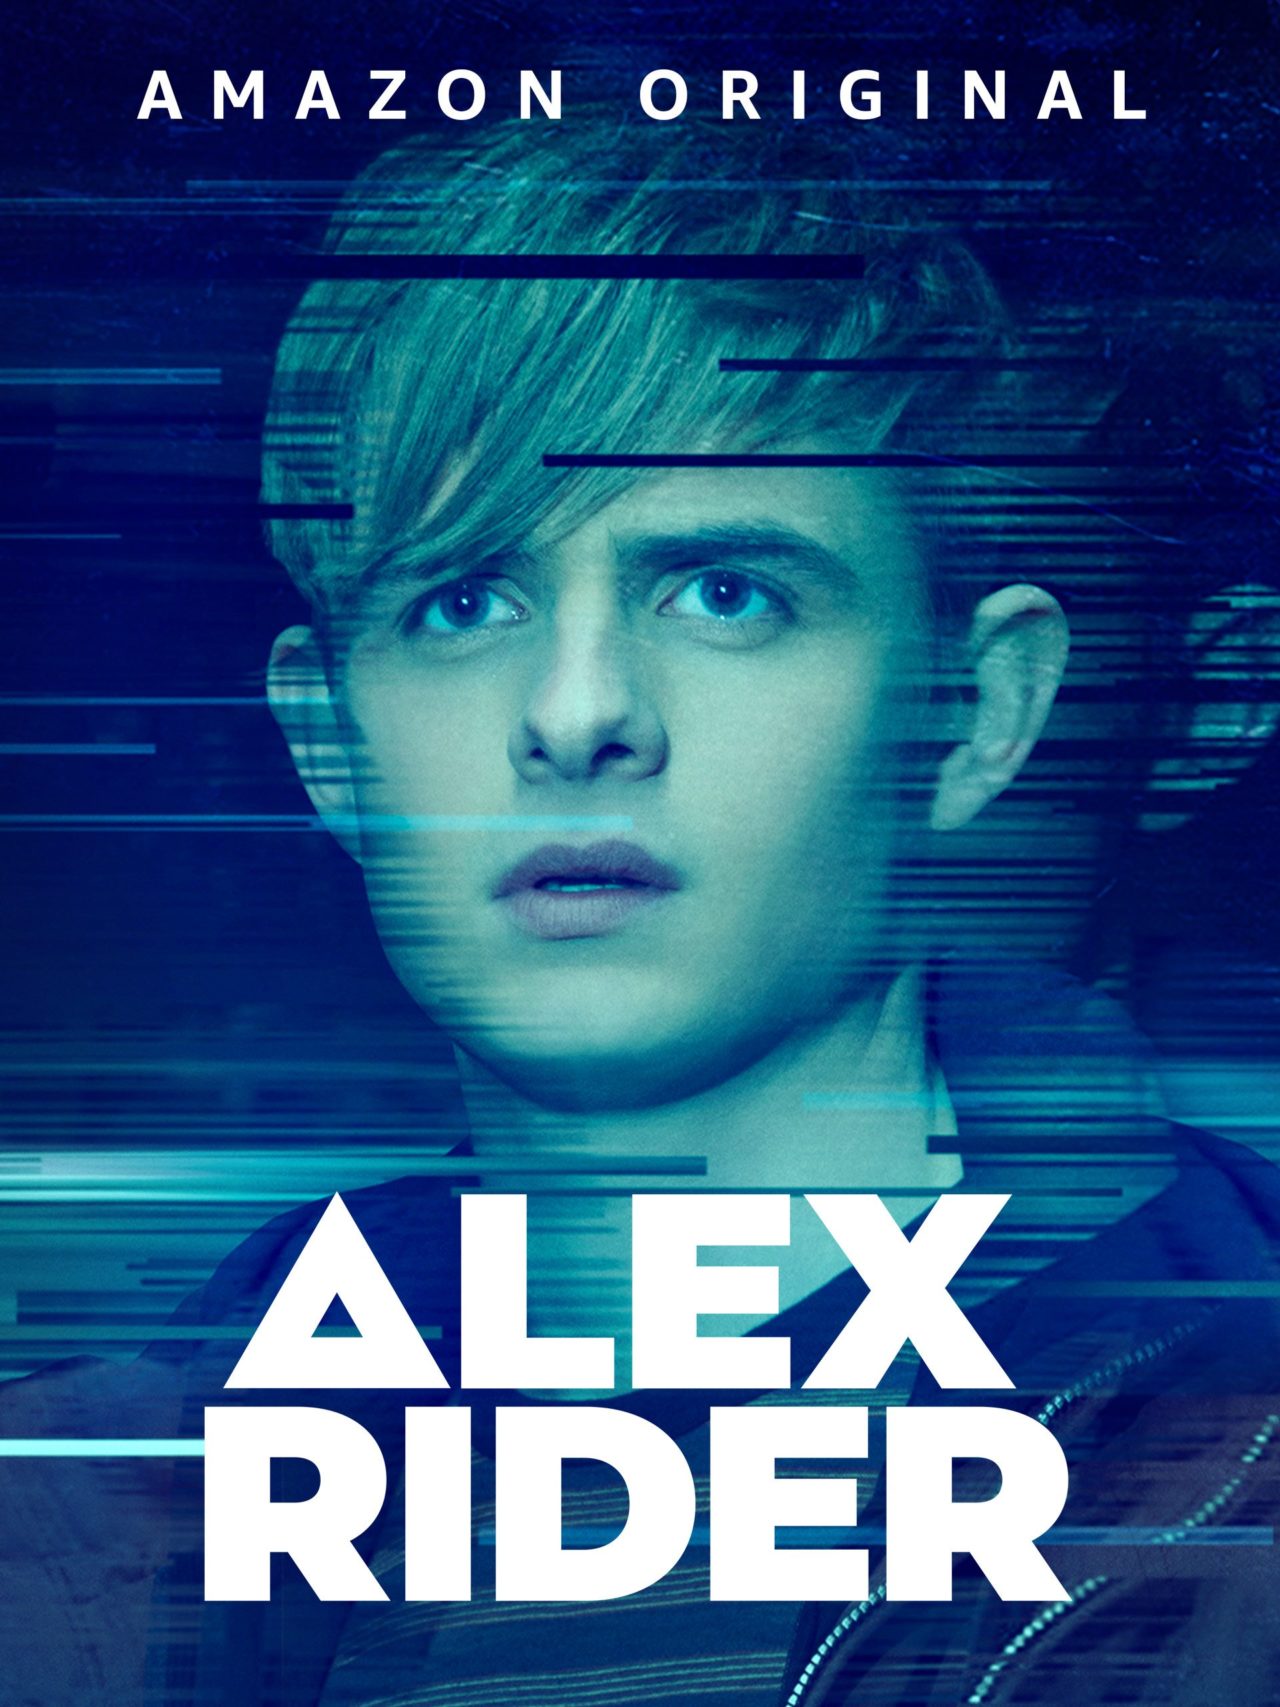 Alex Rider Poster